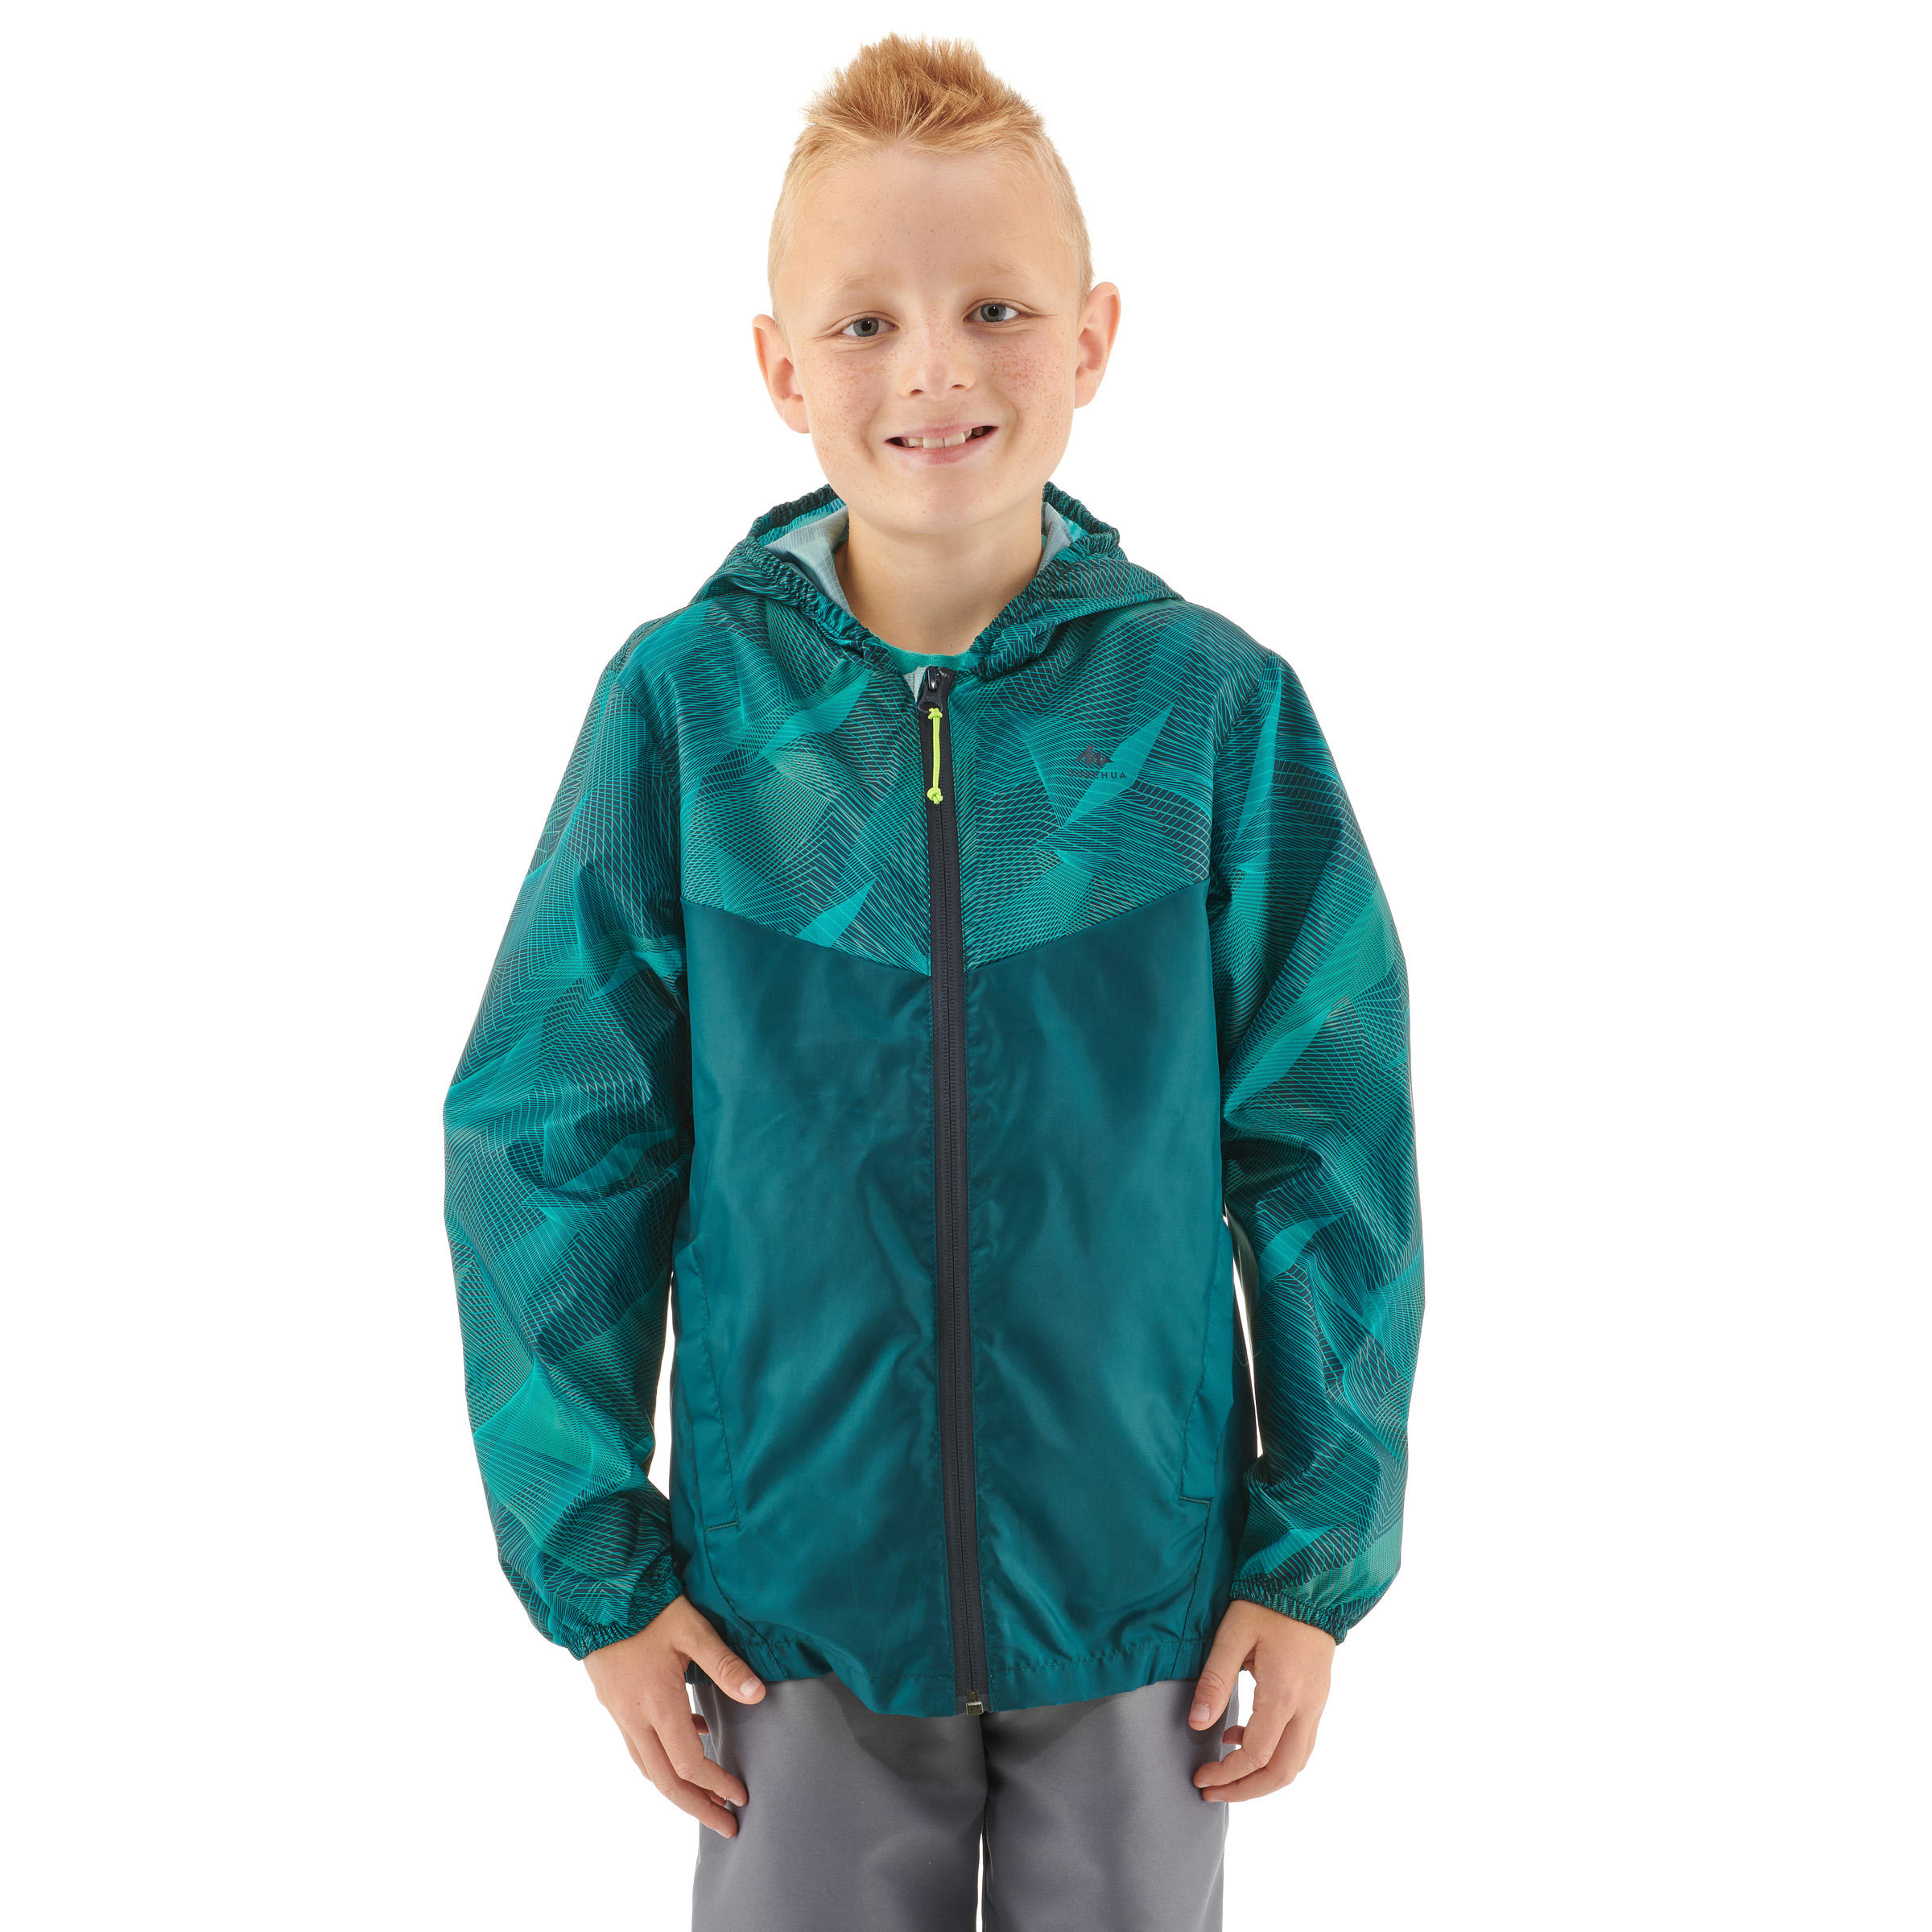 decathlon raincoat for kids